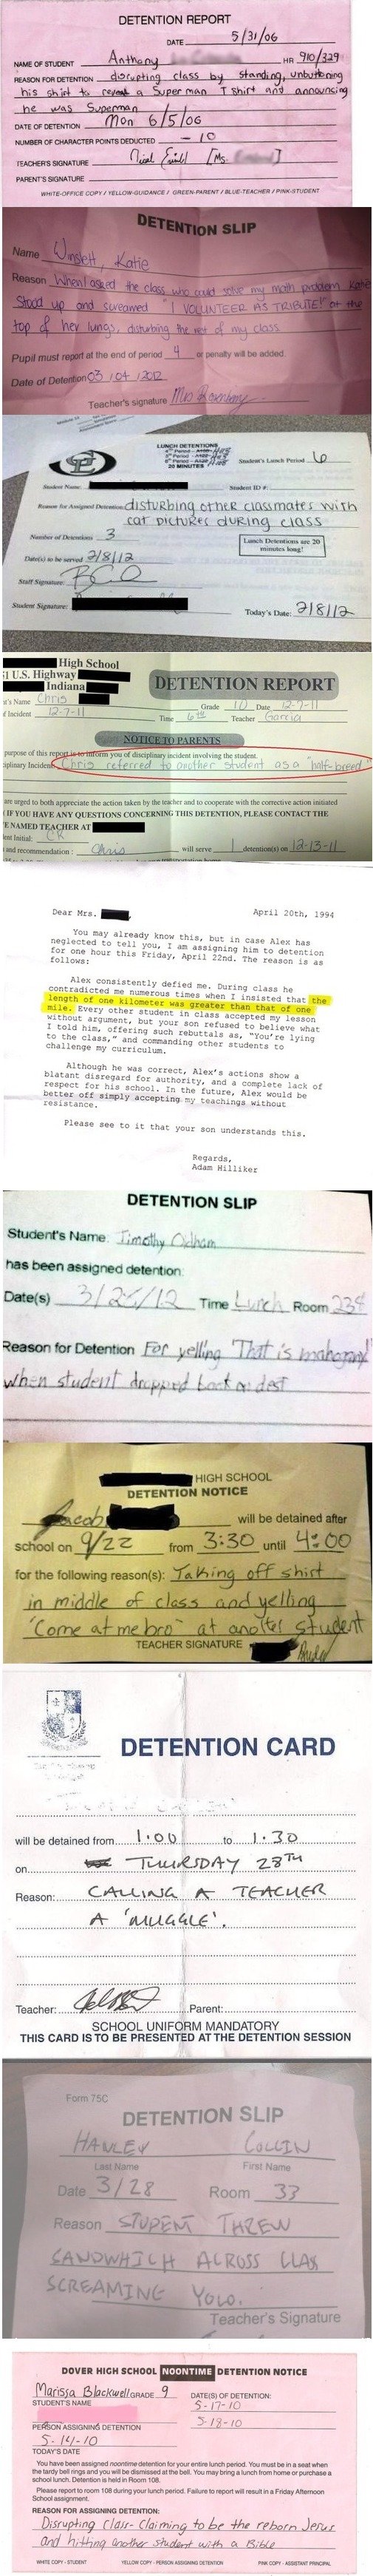 Best detention slips ever